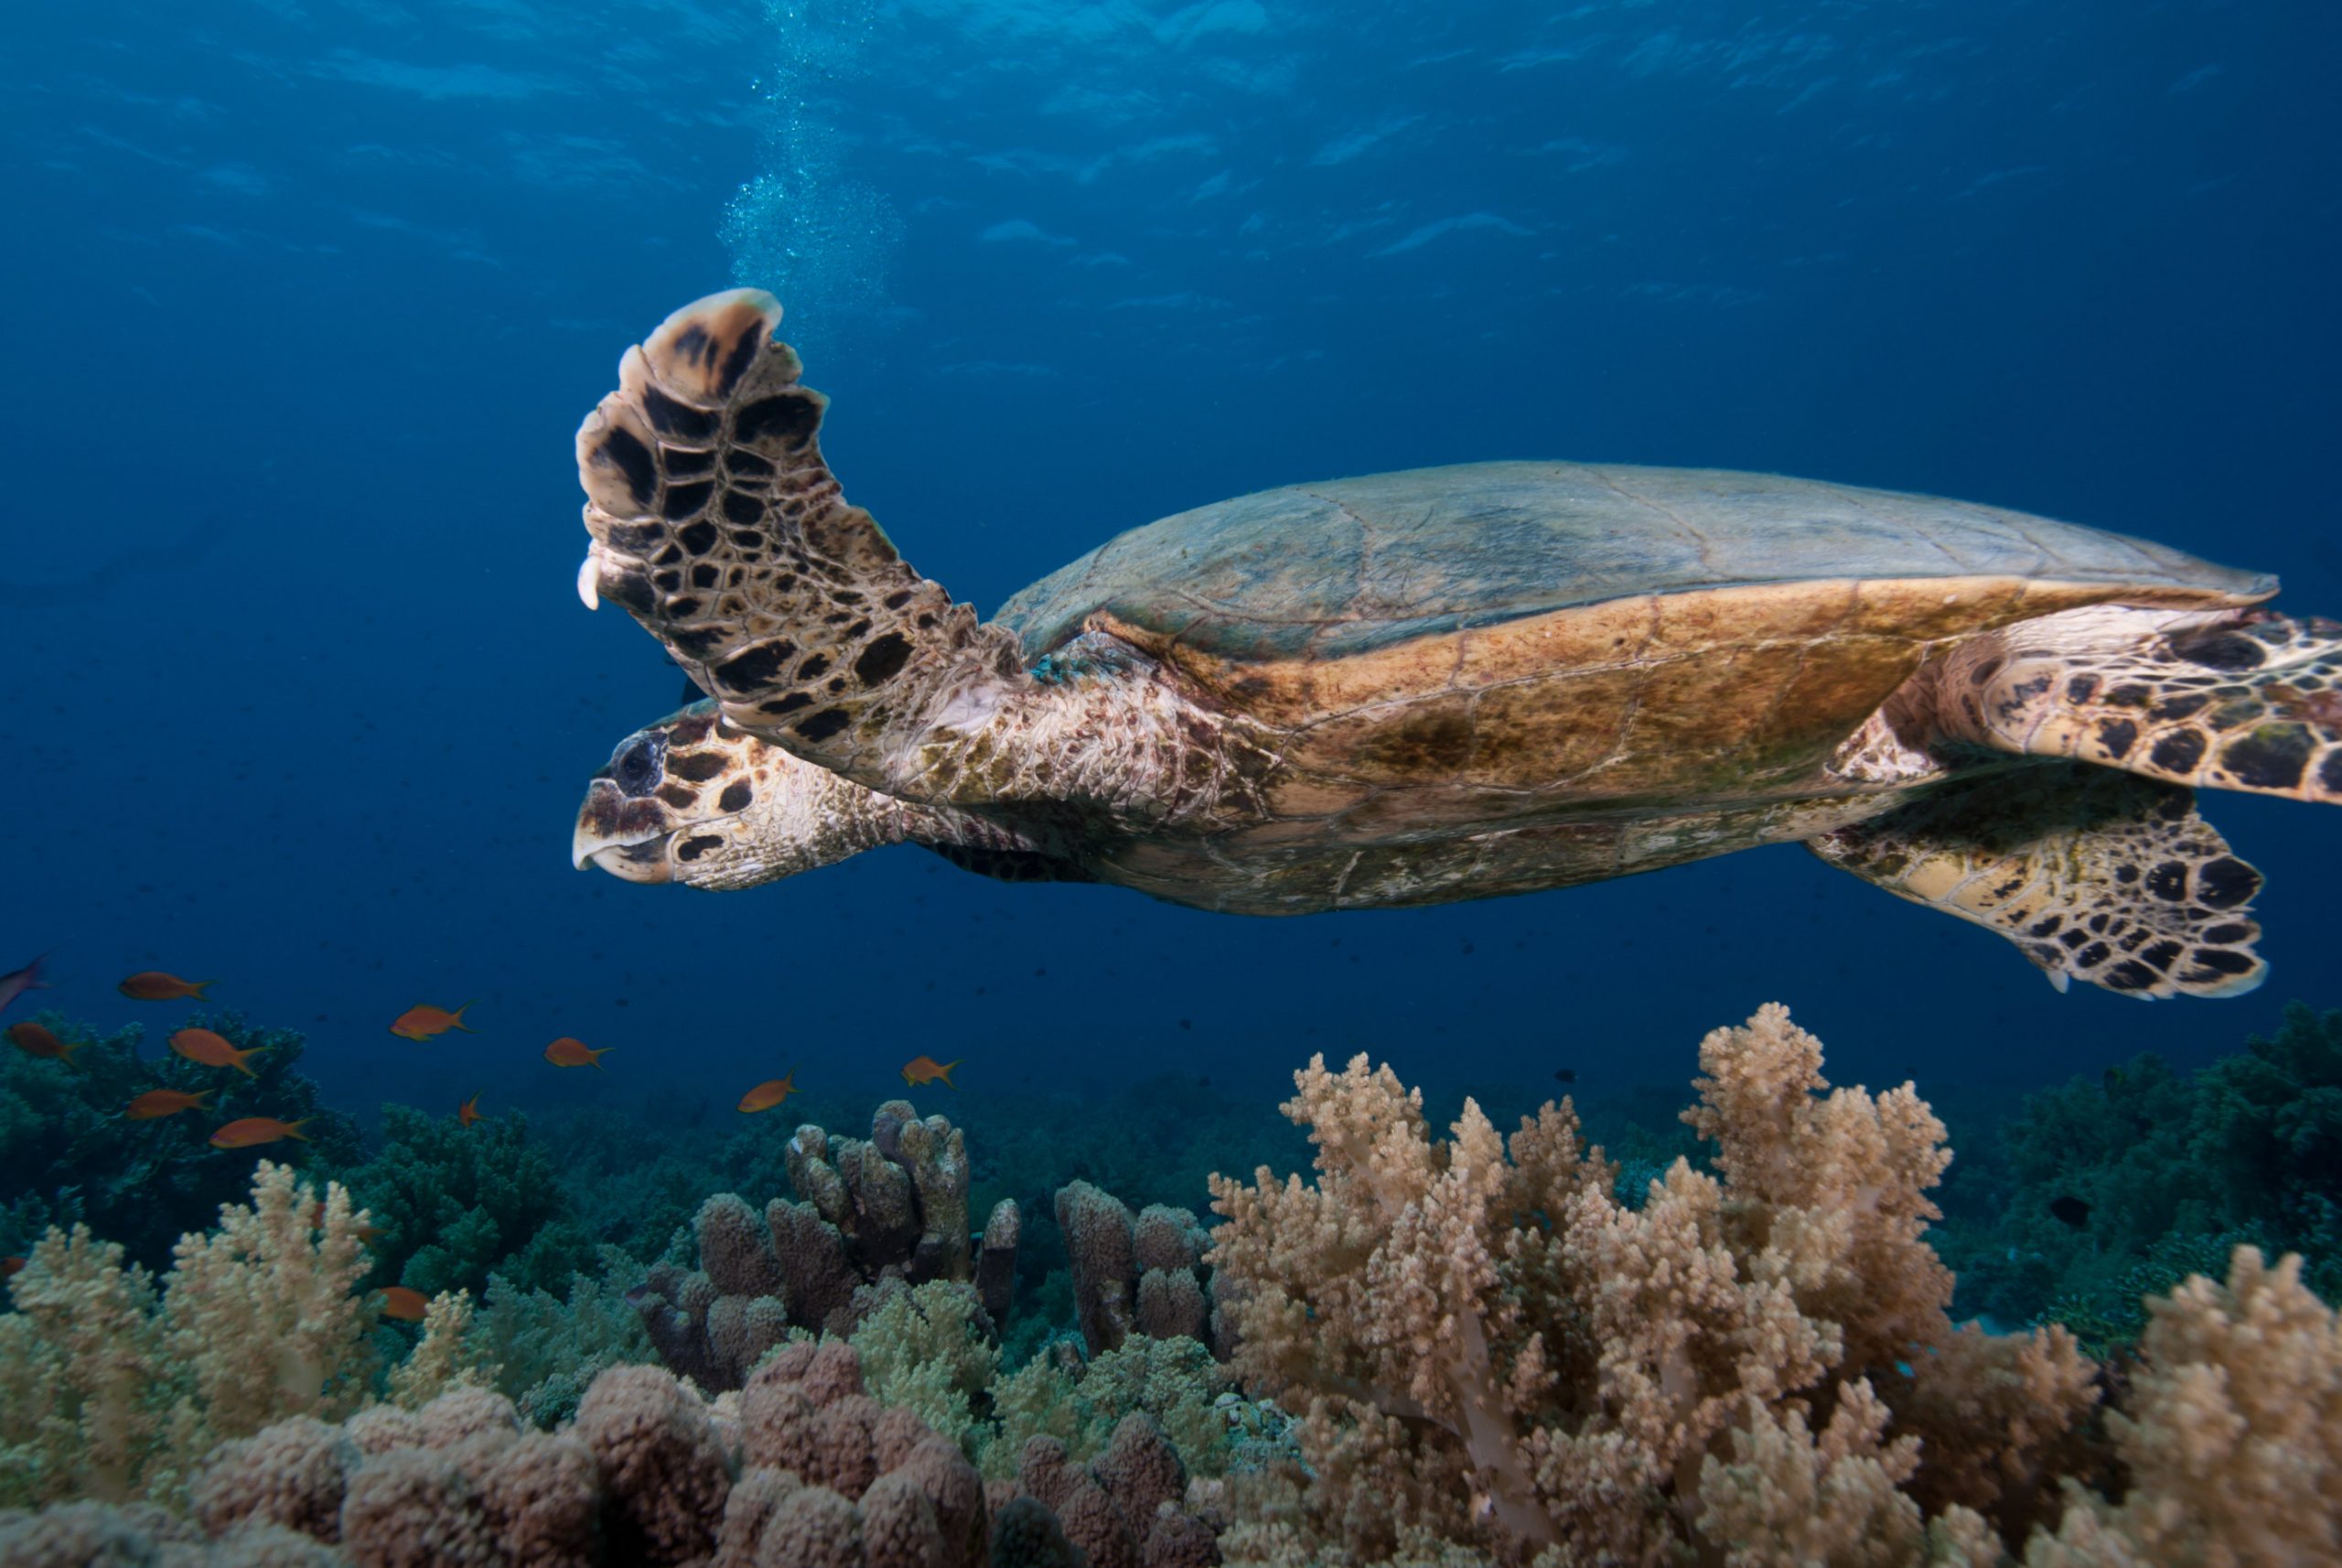 Un esemplare di tartaruga embricata nuota nelle acque della riserva marina Parco nazionale di Ras Mohammed Egitto ©Shutterstock